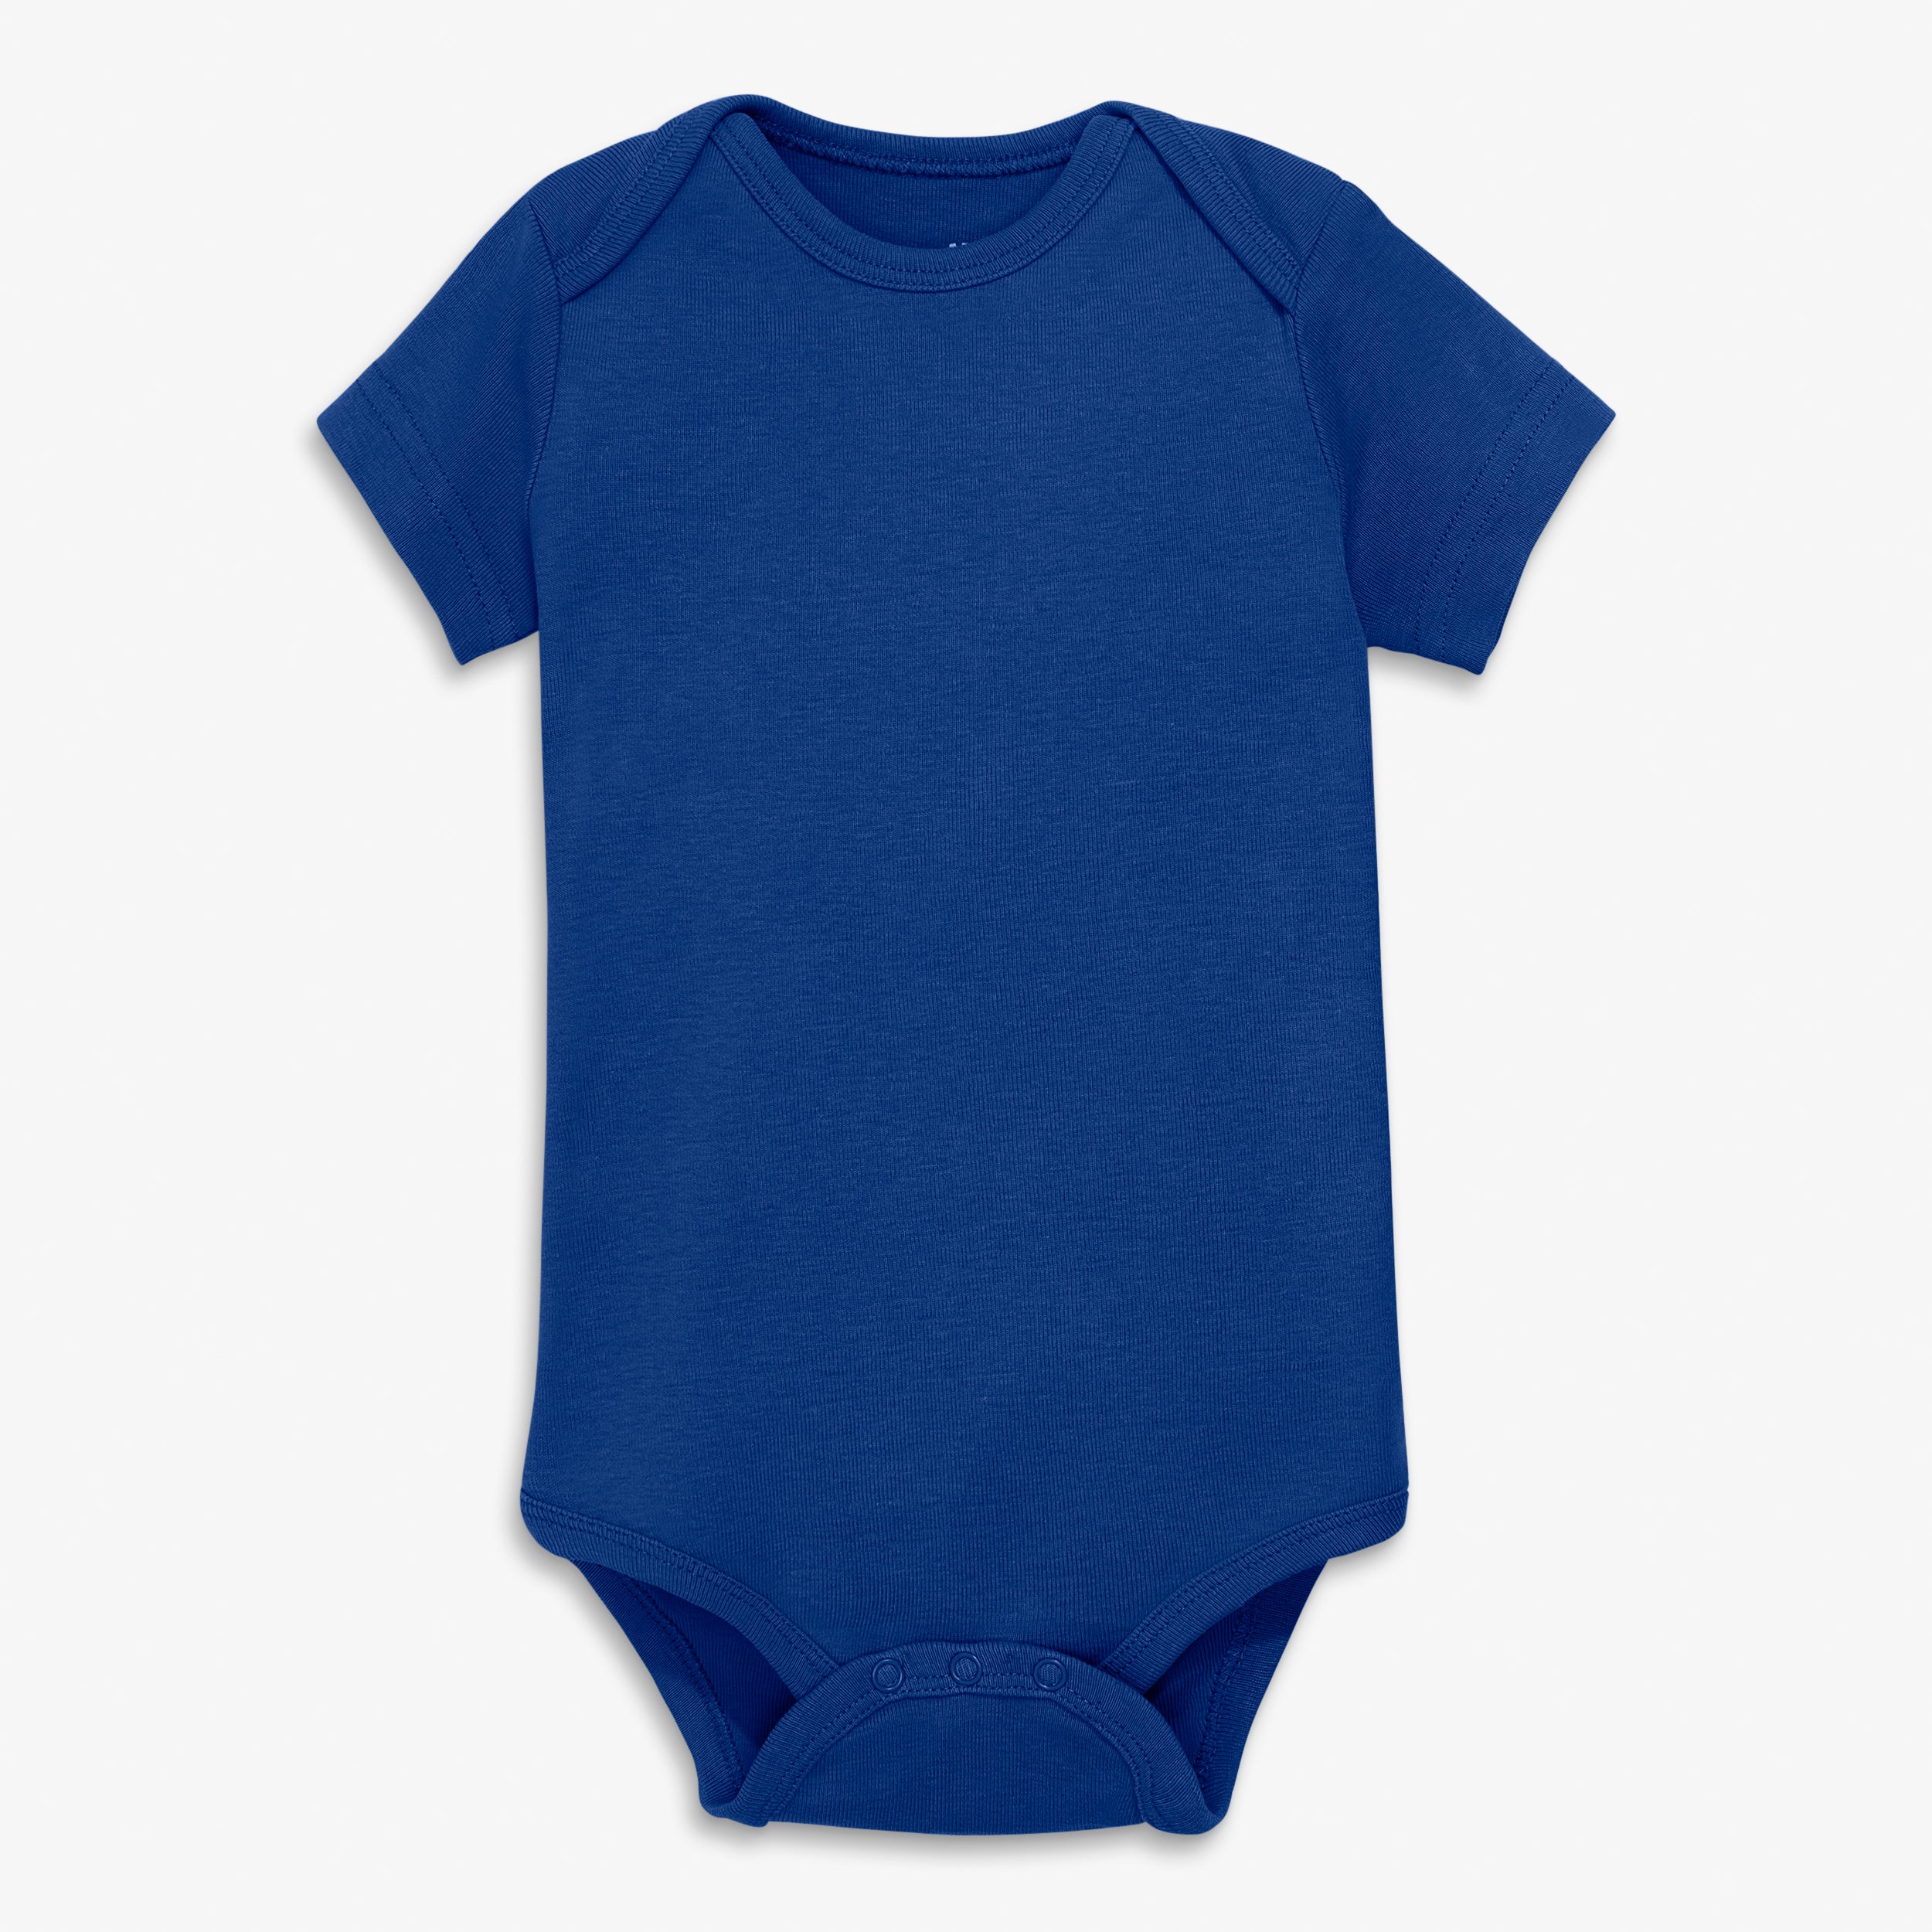 Genuine Stuff MLB Newborn & Infants 0-24 Months Primary Logo Onesie Bodysuit Romper